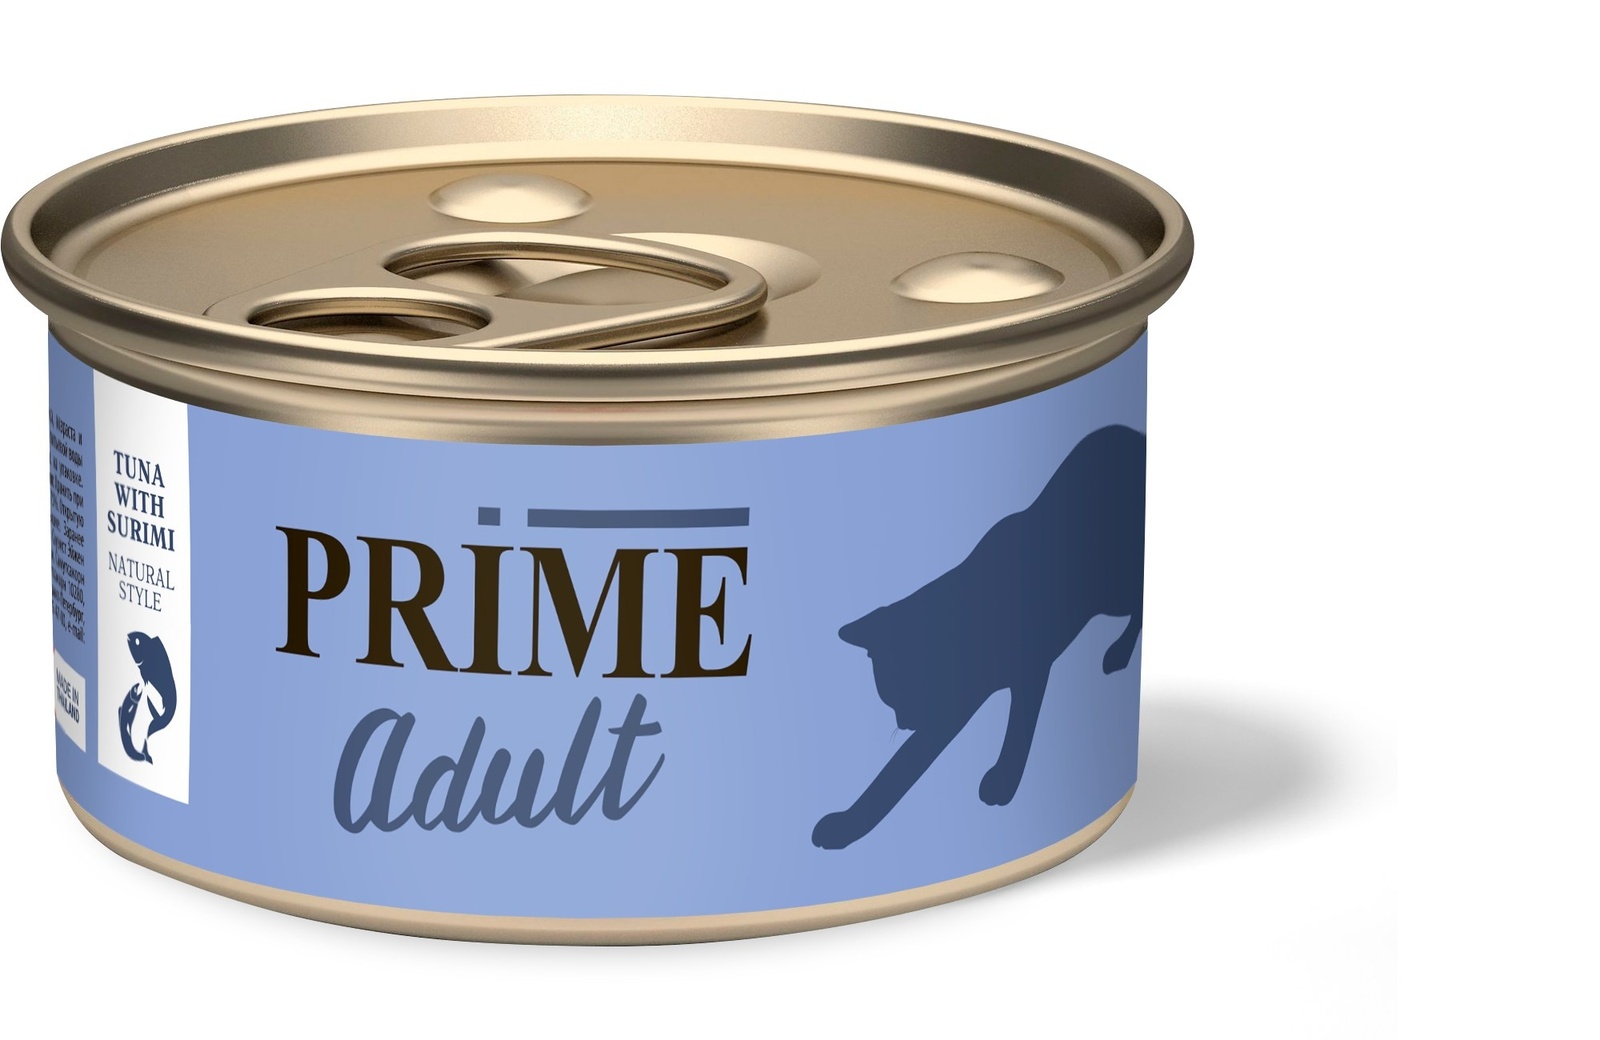 Prime Prime консервы для кошек тунец с сурими в собственном соку (70 г) тунец для салатов беринг в собственном соку 185 г